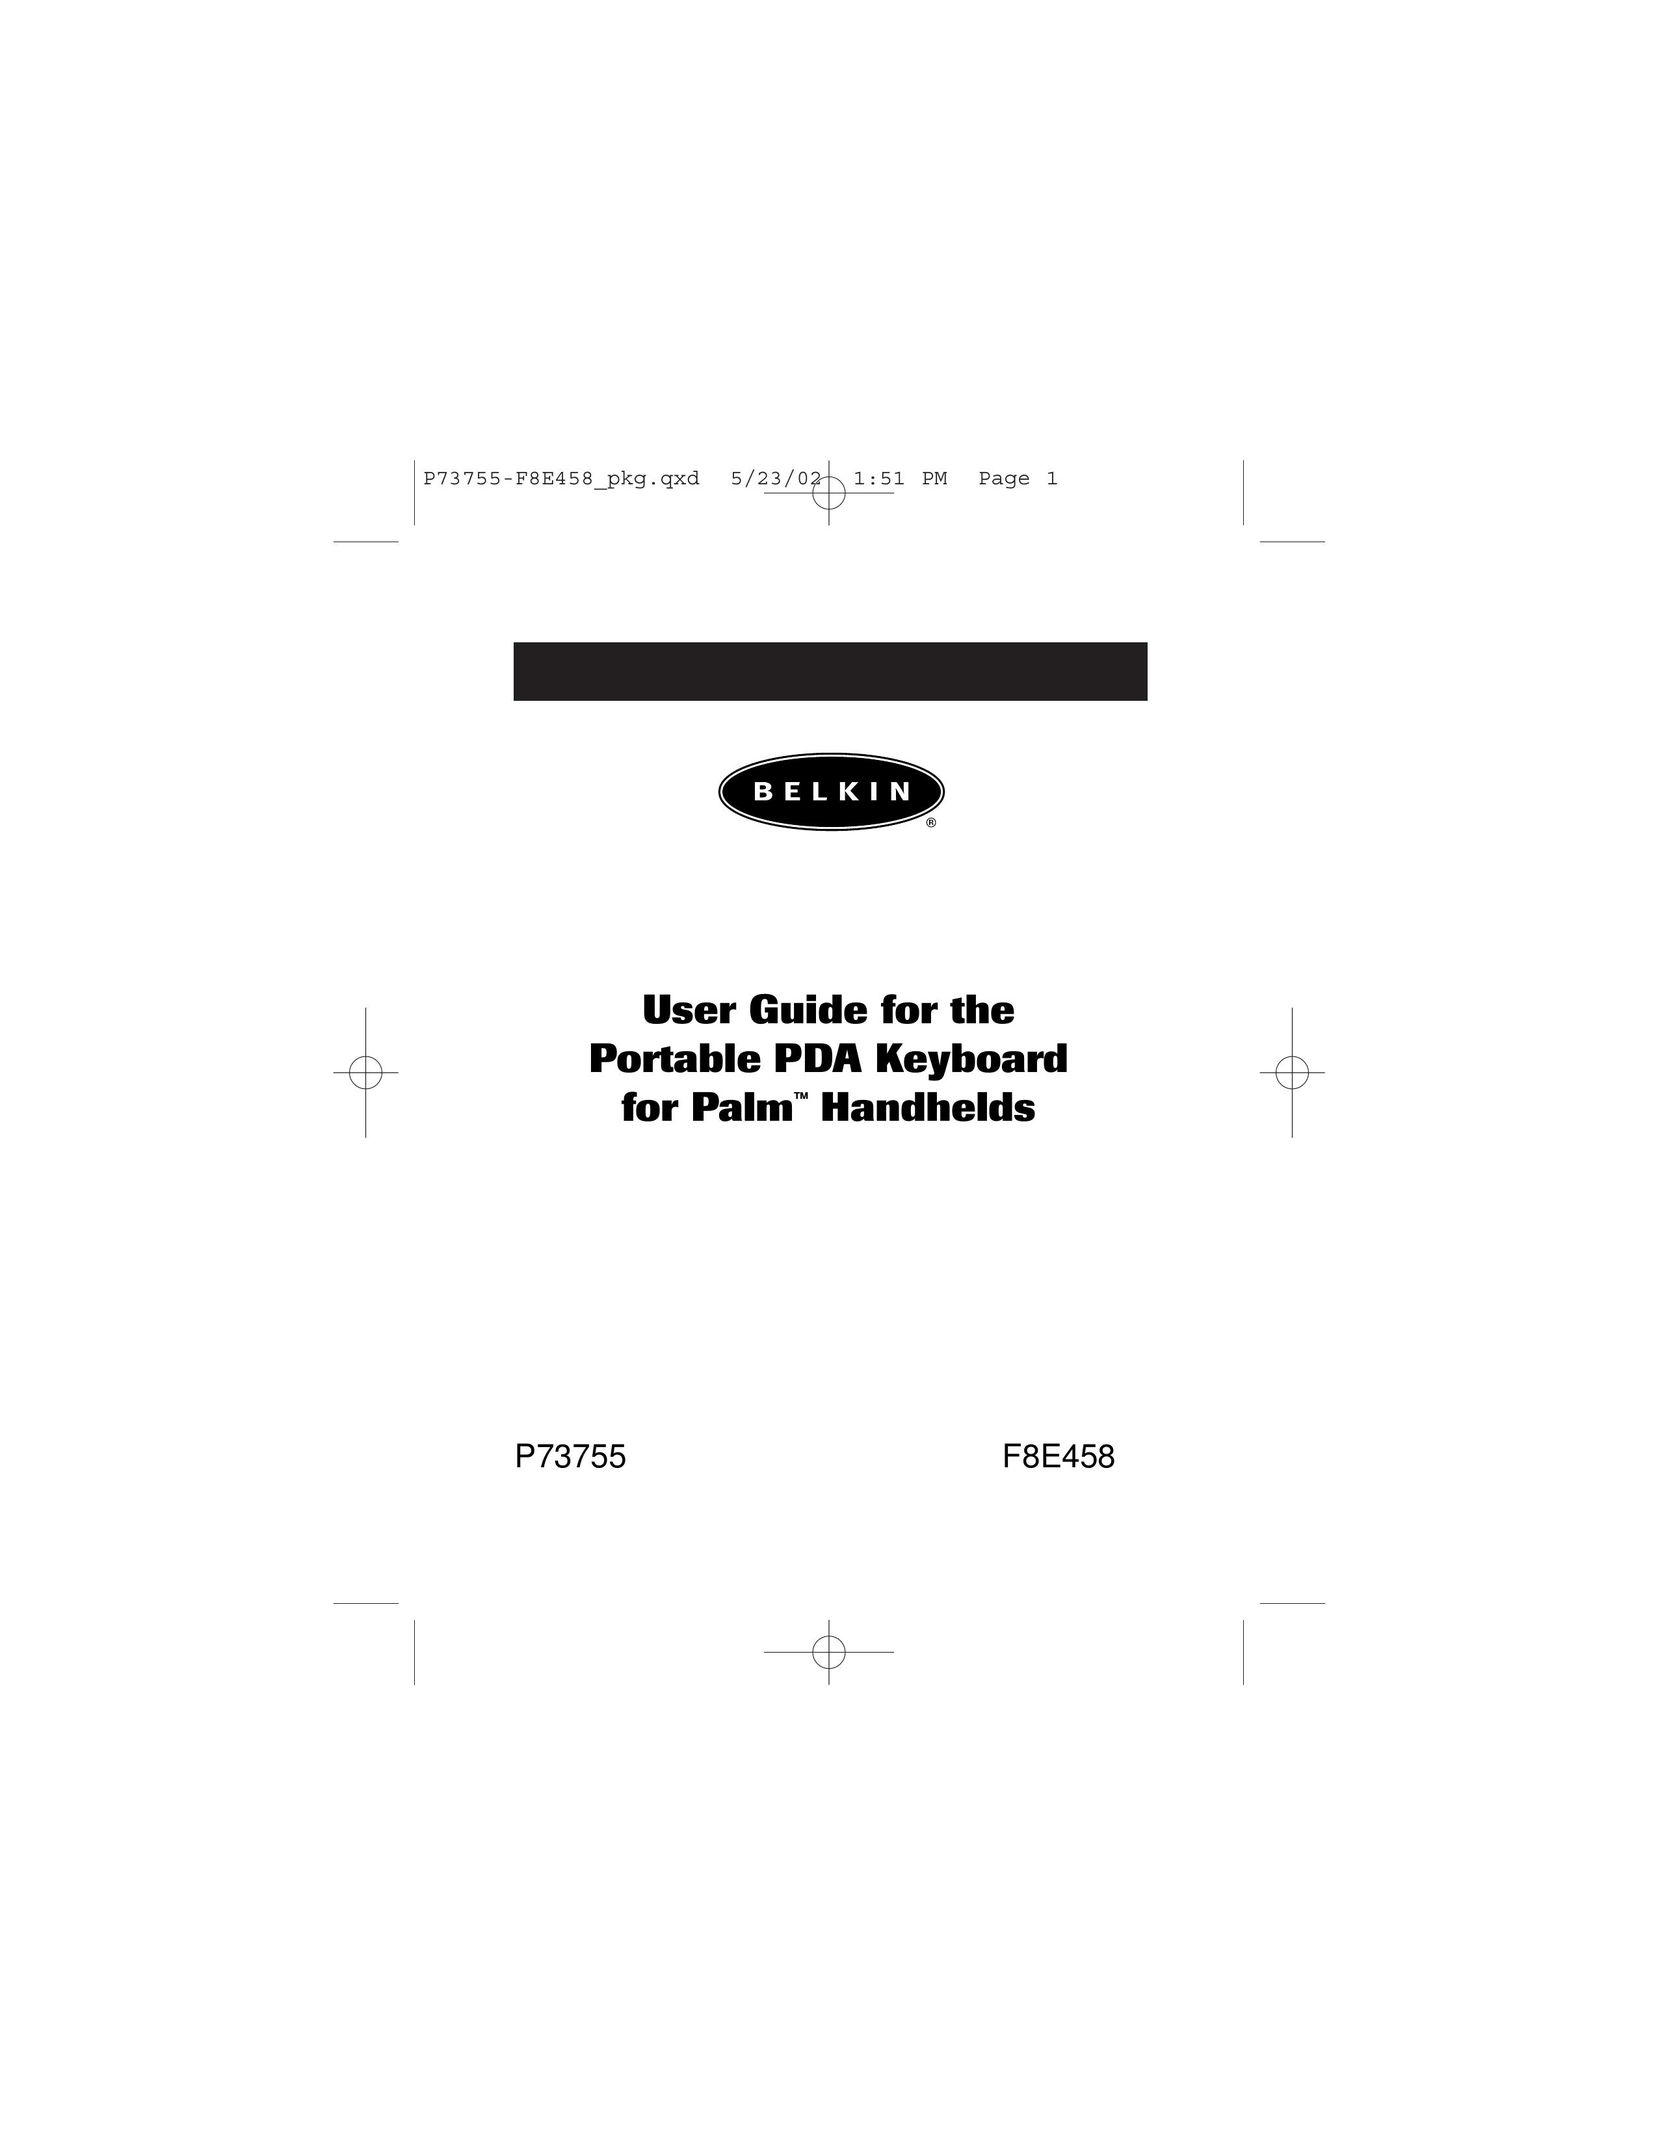 Belkin F8E458 Computer Keyboard User Manual